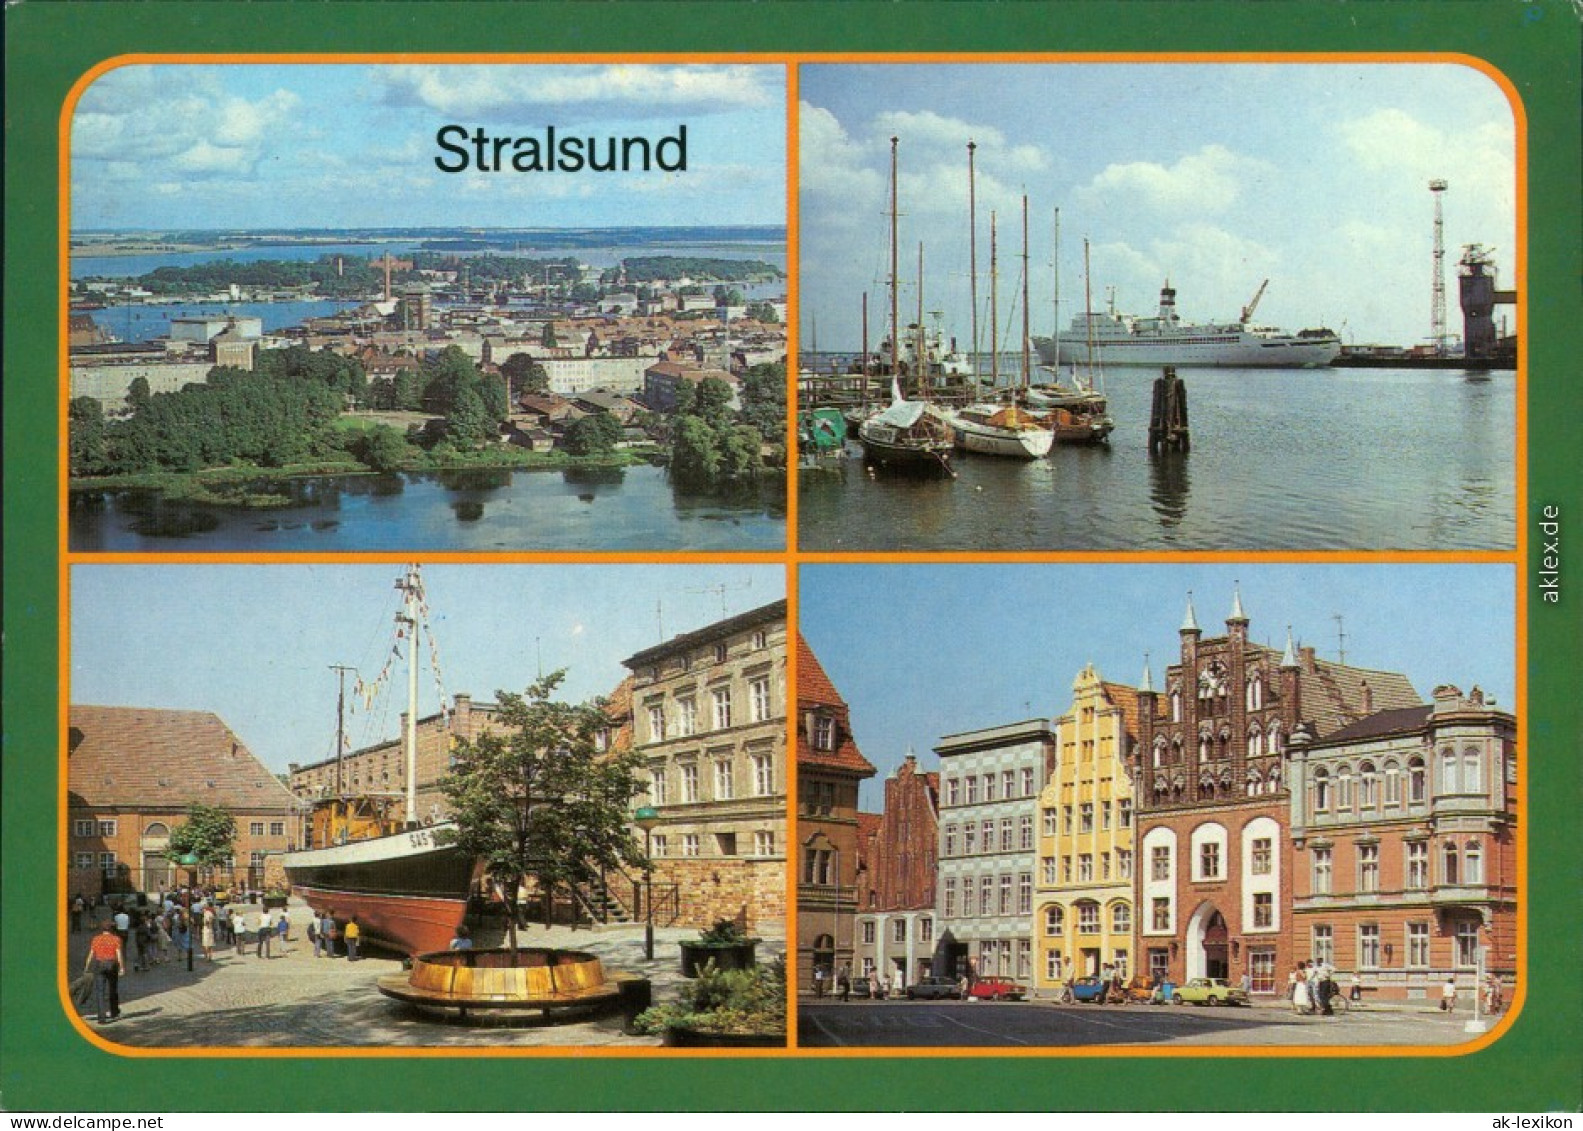 Stralsund   Zum Dänholm  Hafen, 17-m-Kutter Am Meeresmuseum Hafen 1987 - Stralsund